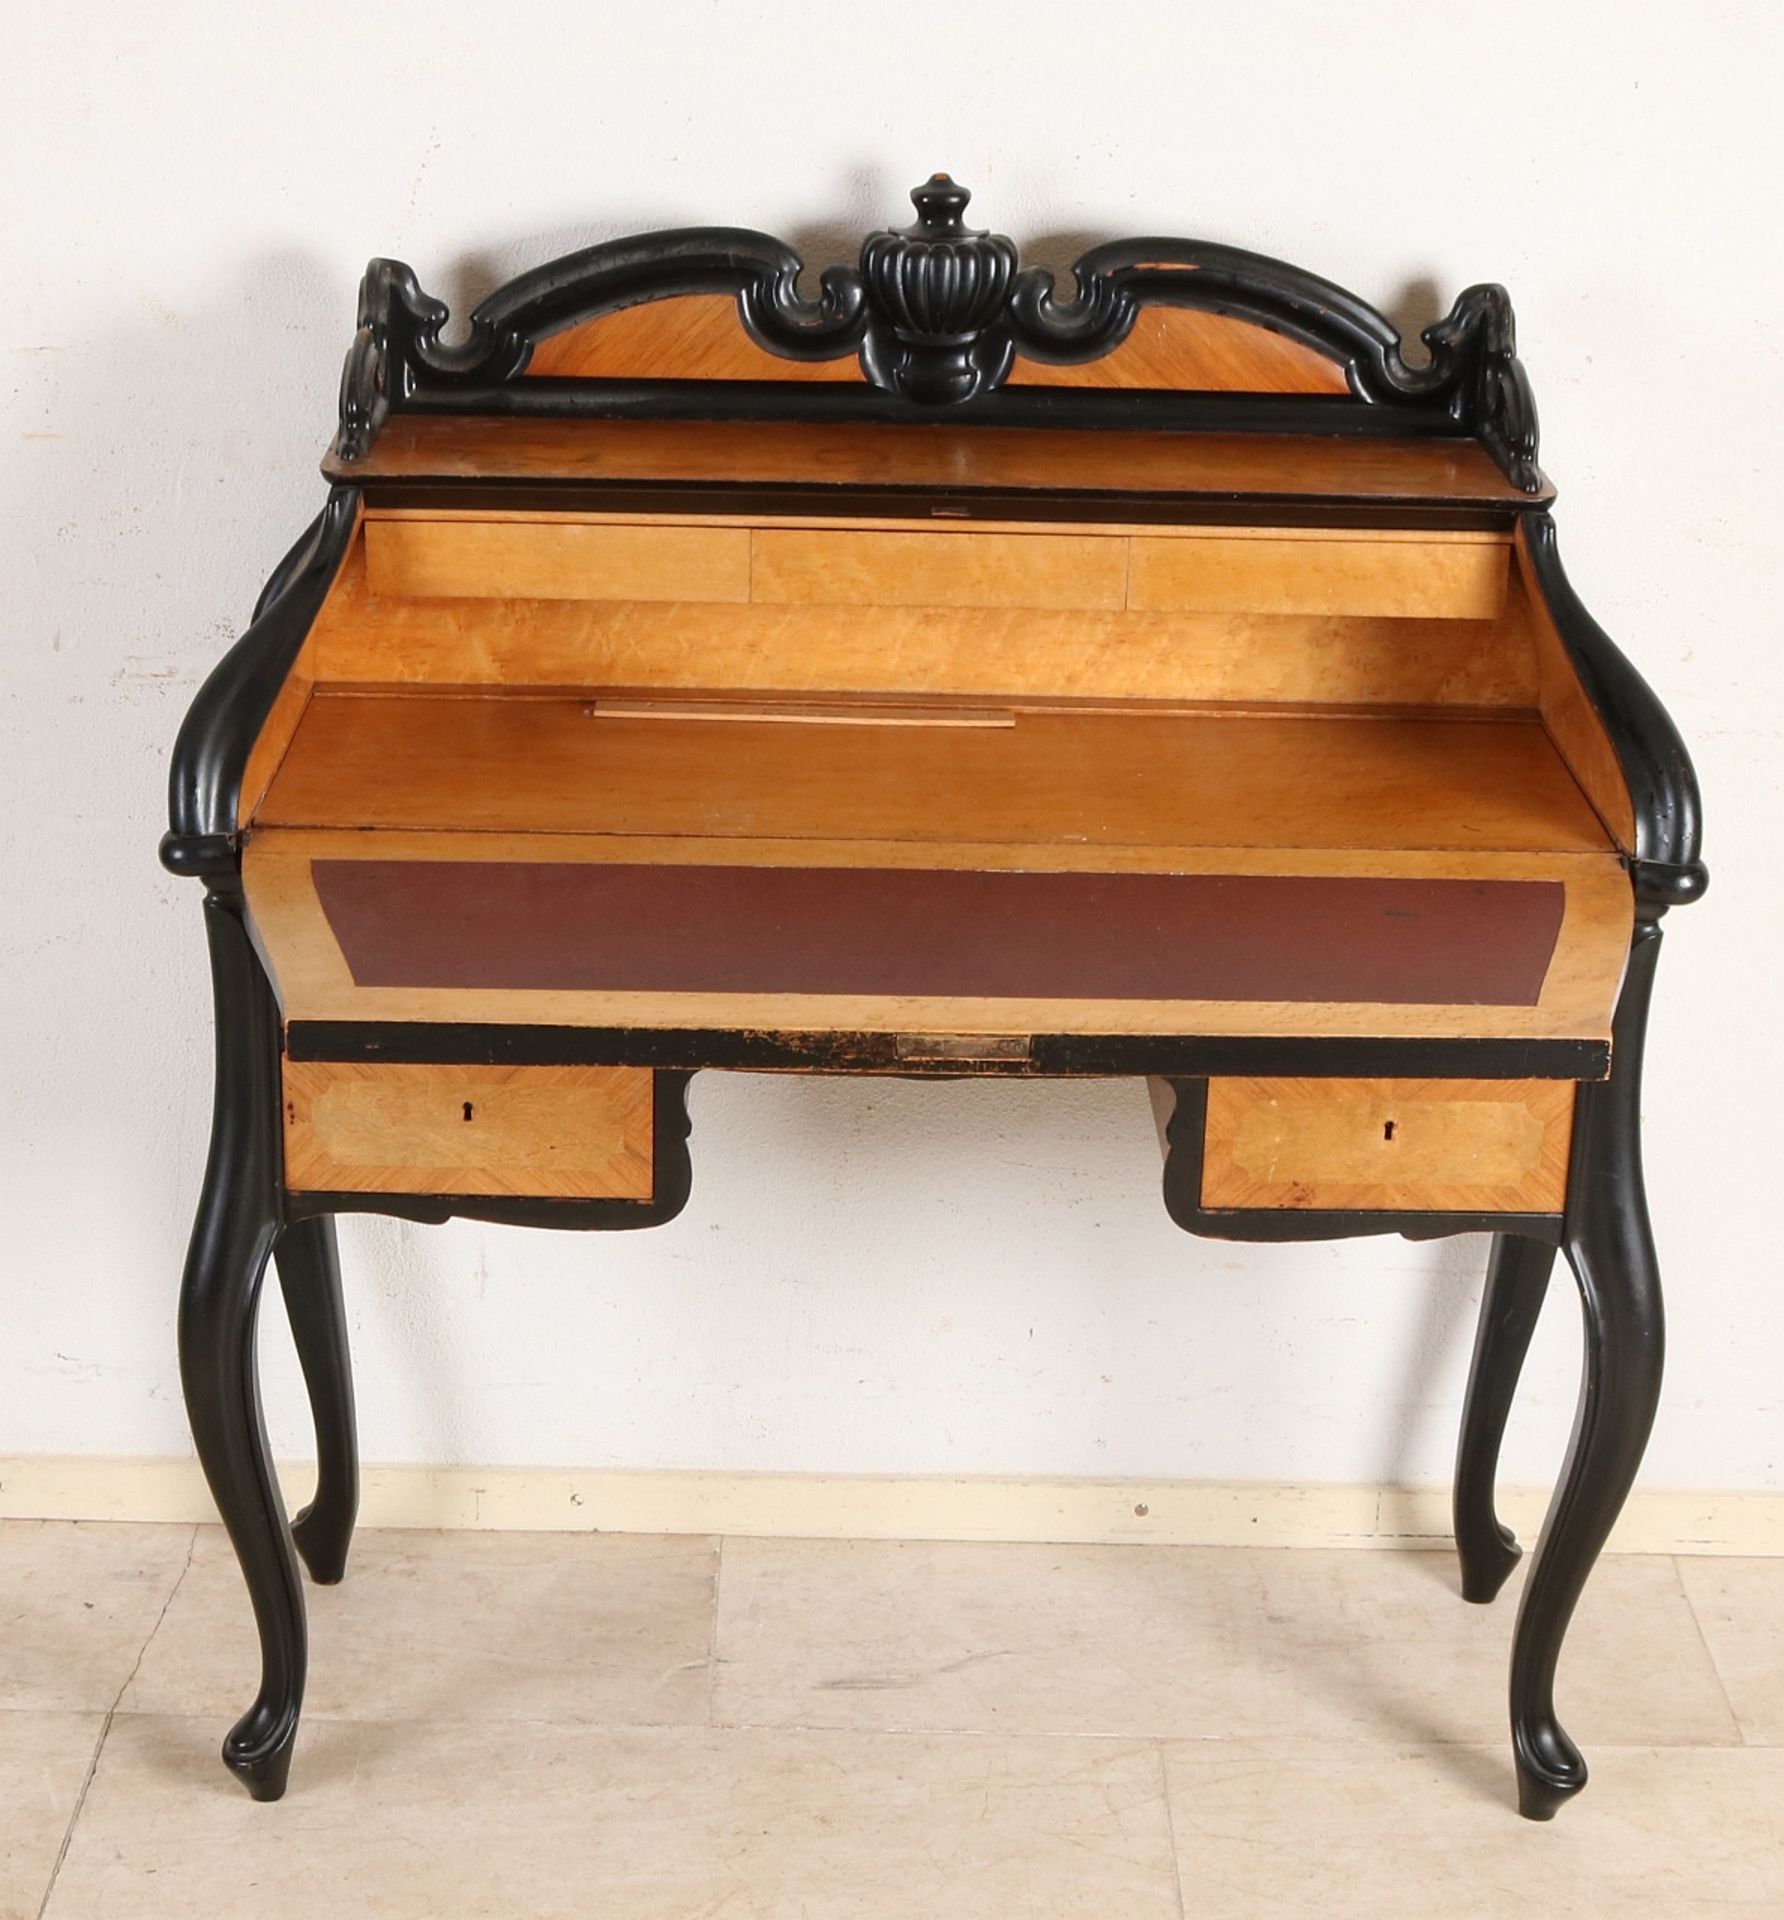 Holland WIII Walnuss Damen Schreibtisch um 1870. Schreibtisch ist komplett mit schwarz besetzt. Un - Bild 2 aus 2